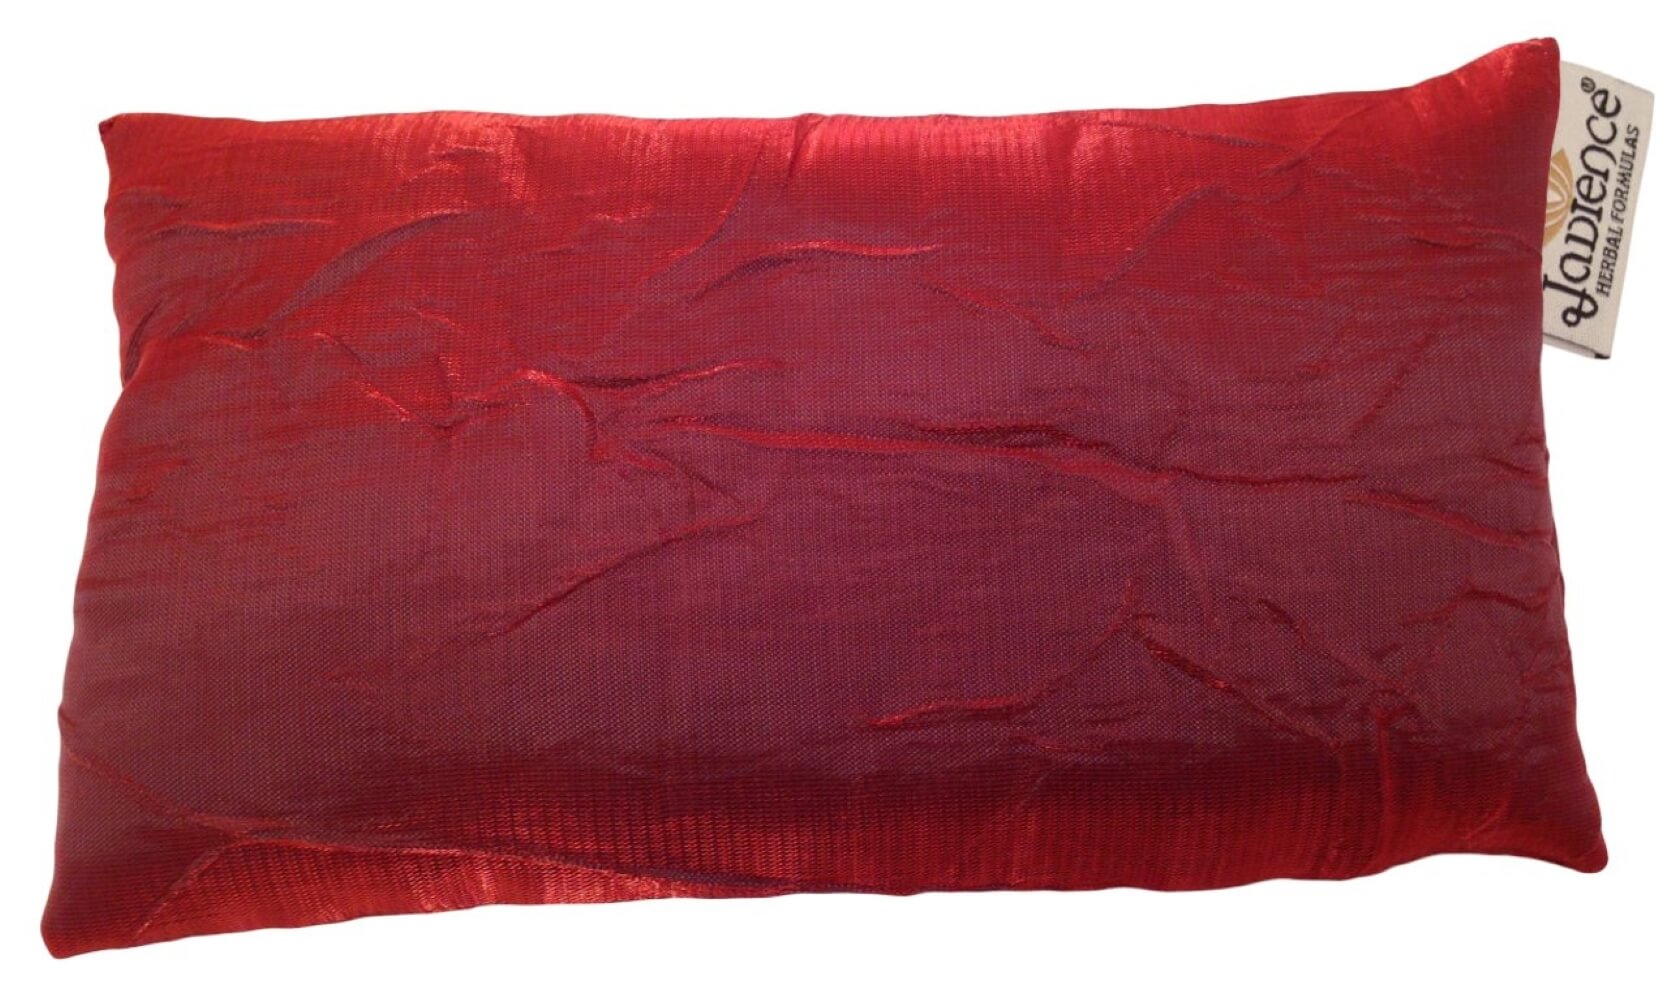 Jade Healing Eye Pillow – NEW Red